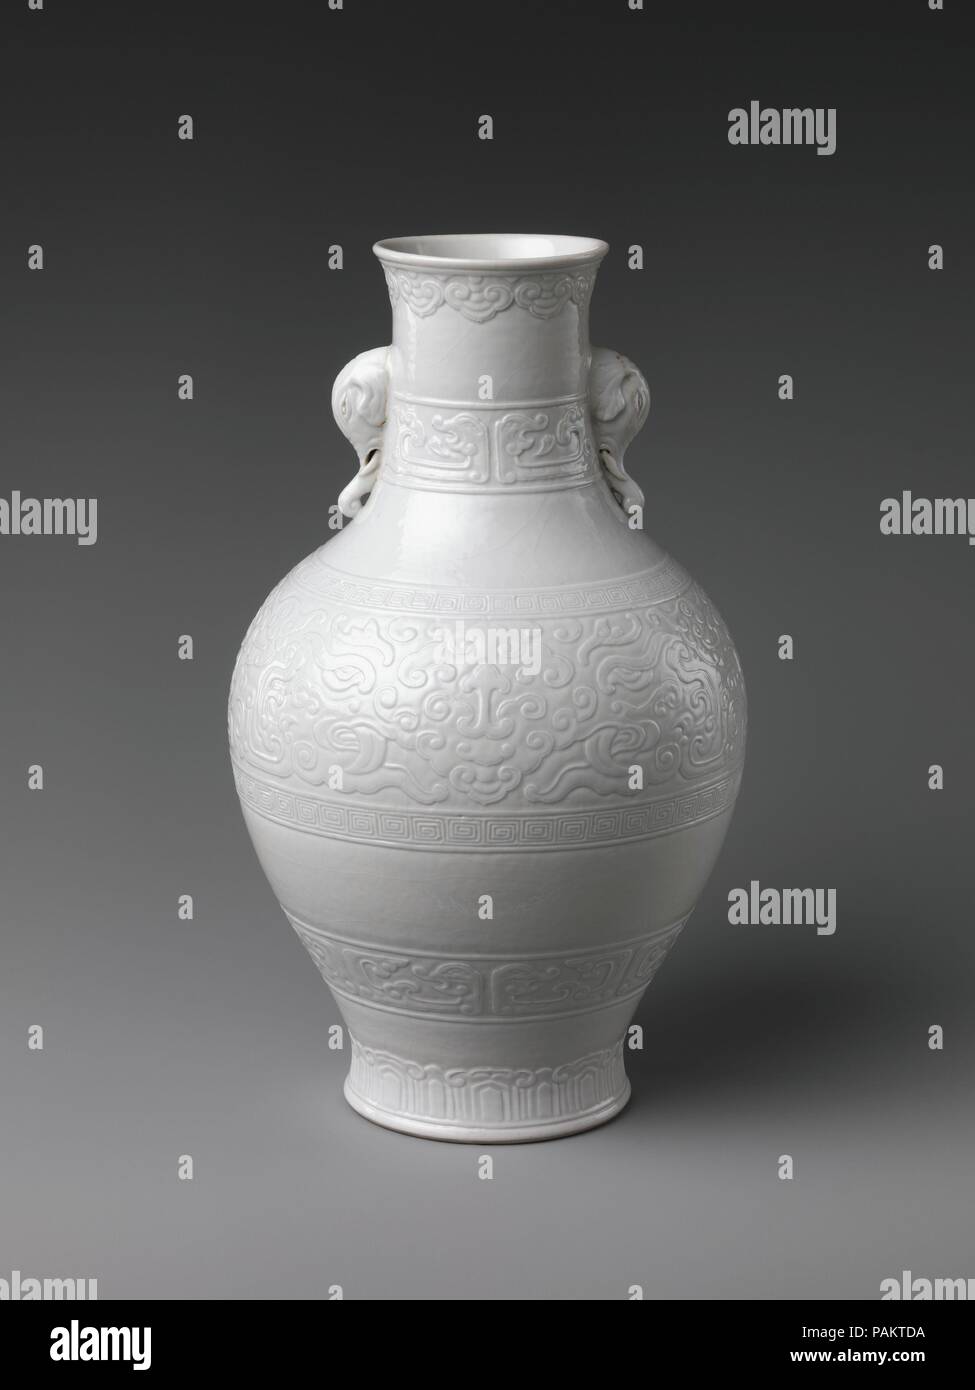 Vase mit Elefantenköpfen und Cloud Designs. Kultur: China. Abmessungen: H.10 in. (25,4 cm); Durchm. 6 in. (15,2 cm). Im achtzehnten Jahrhundert, die Brennöfen in Jingdezhen begann Porzellane aus einem anderen Werkstoff zu machen. Wie huashi, oder 'Slippery Stein bekannt, "diese teures Material, oft als weiche Paste, wurde verwendet, um dünne Schiffe, die häufig mit eingeschnittenen oder angehobene Designs unter Glasur dekoriert waren. Während die Gründe für ihre Einführung bleiben unklar, es ist bemerkenswert, dass weiche Paste leicht carvable ist, und seine Verwendung hätte somit Verwandt mit gleichzeitigen Interessen in der MANIP. Stockfoto